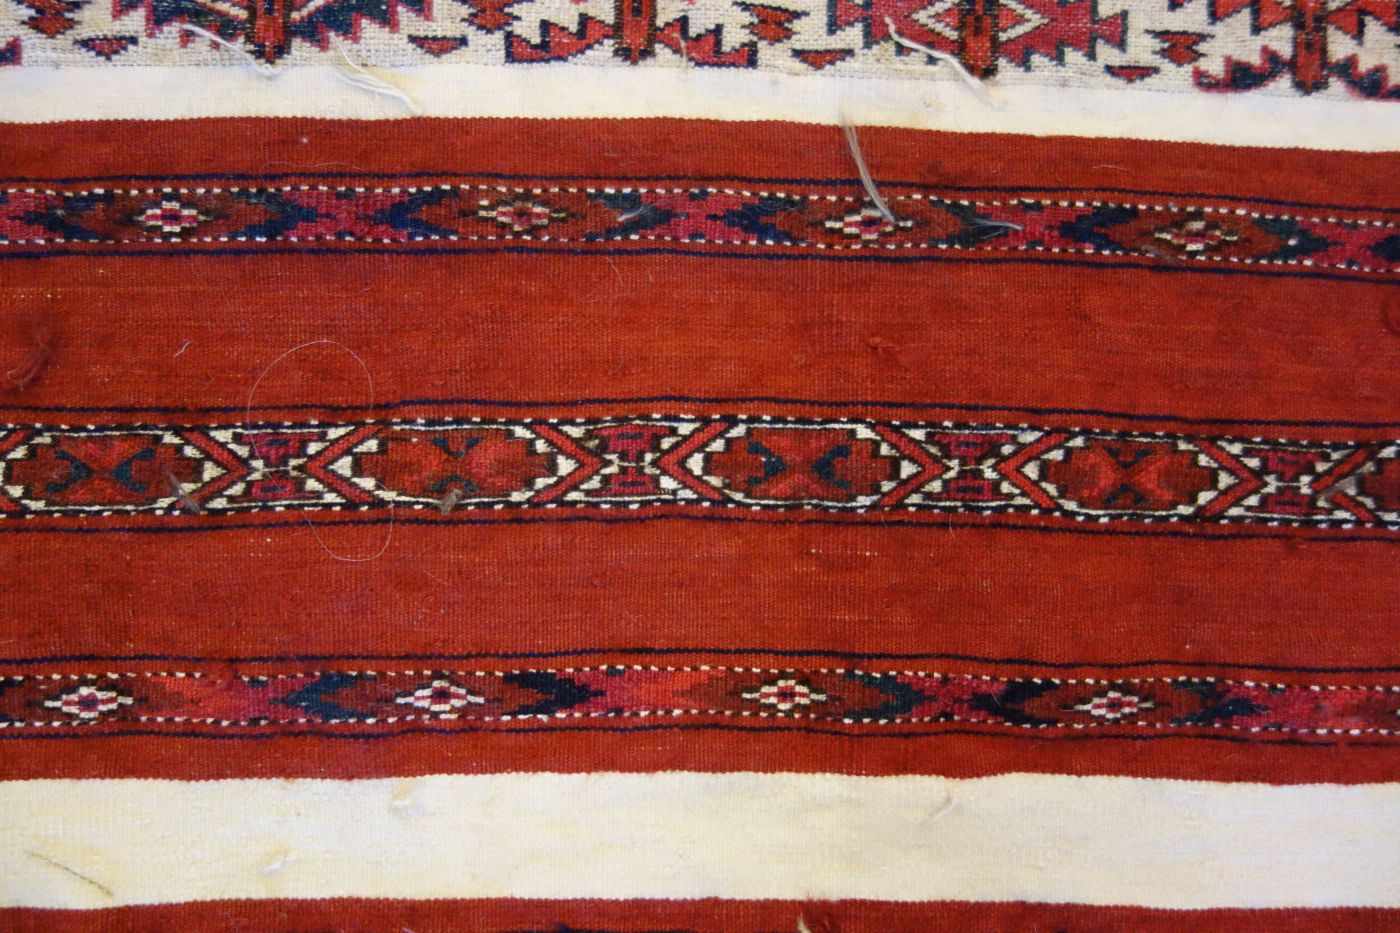 TEKKE AK-TSCHOWAL / TEPPICH / carpet, Turkmenistan, wohl 2. H. 19. Jh., Wechsel von Flor und - Bild 7 aus 18